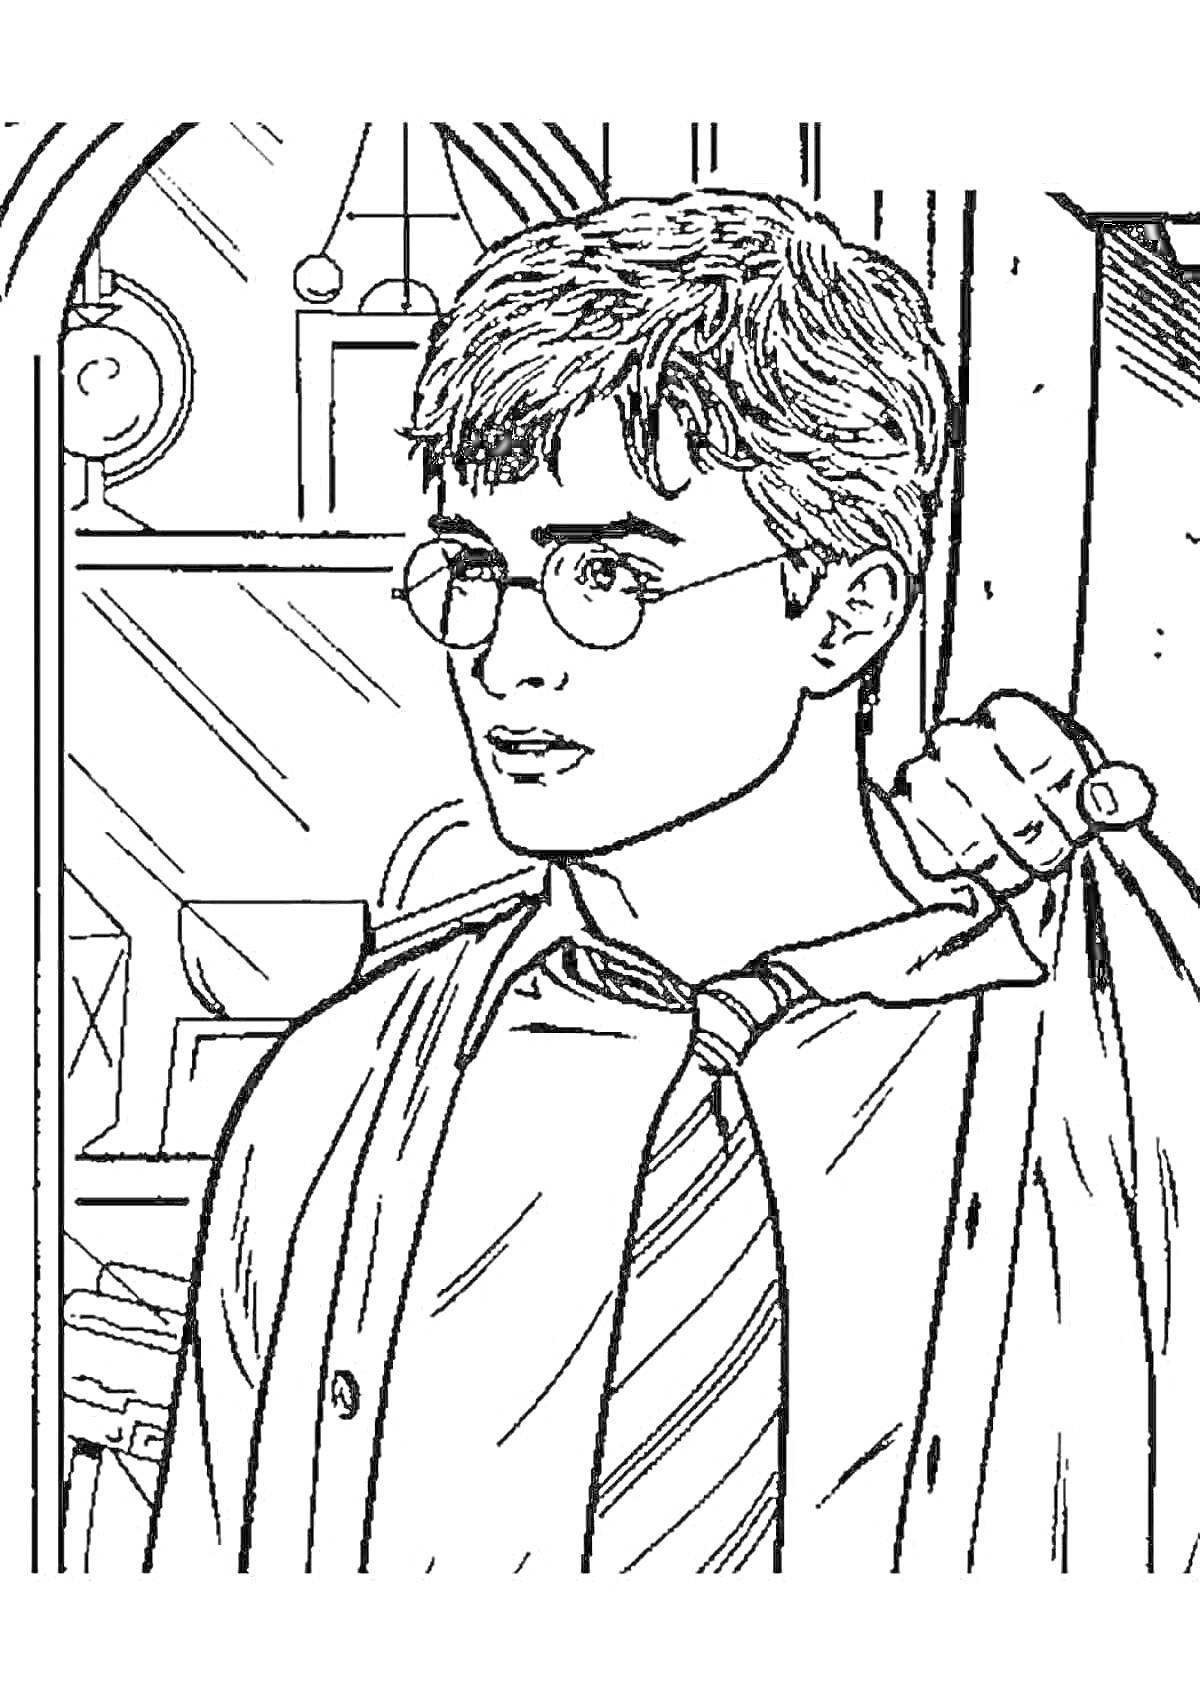 Раскраска Гаррипоттер в очках и галстуке, на фоне арочного окна и полки с часами и свитками